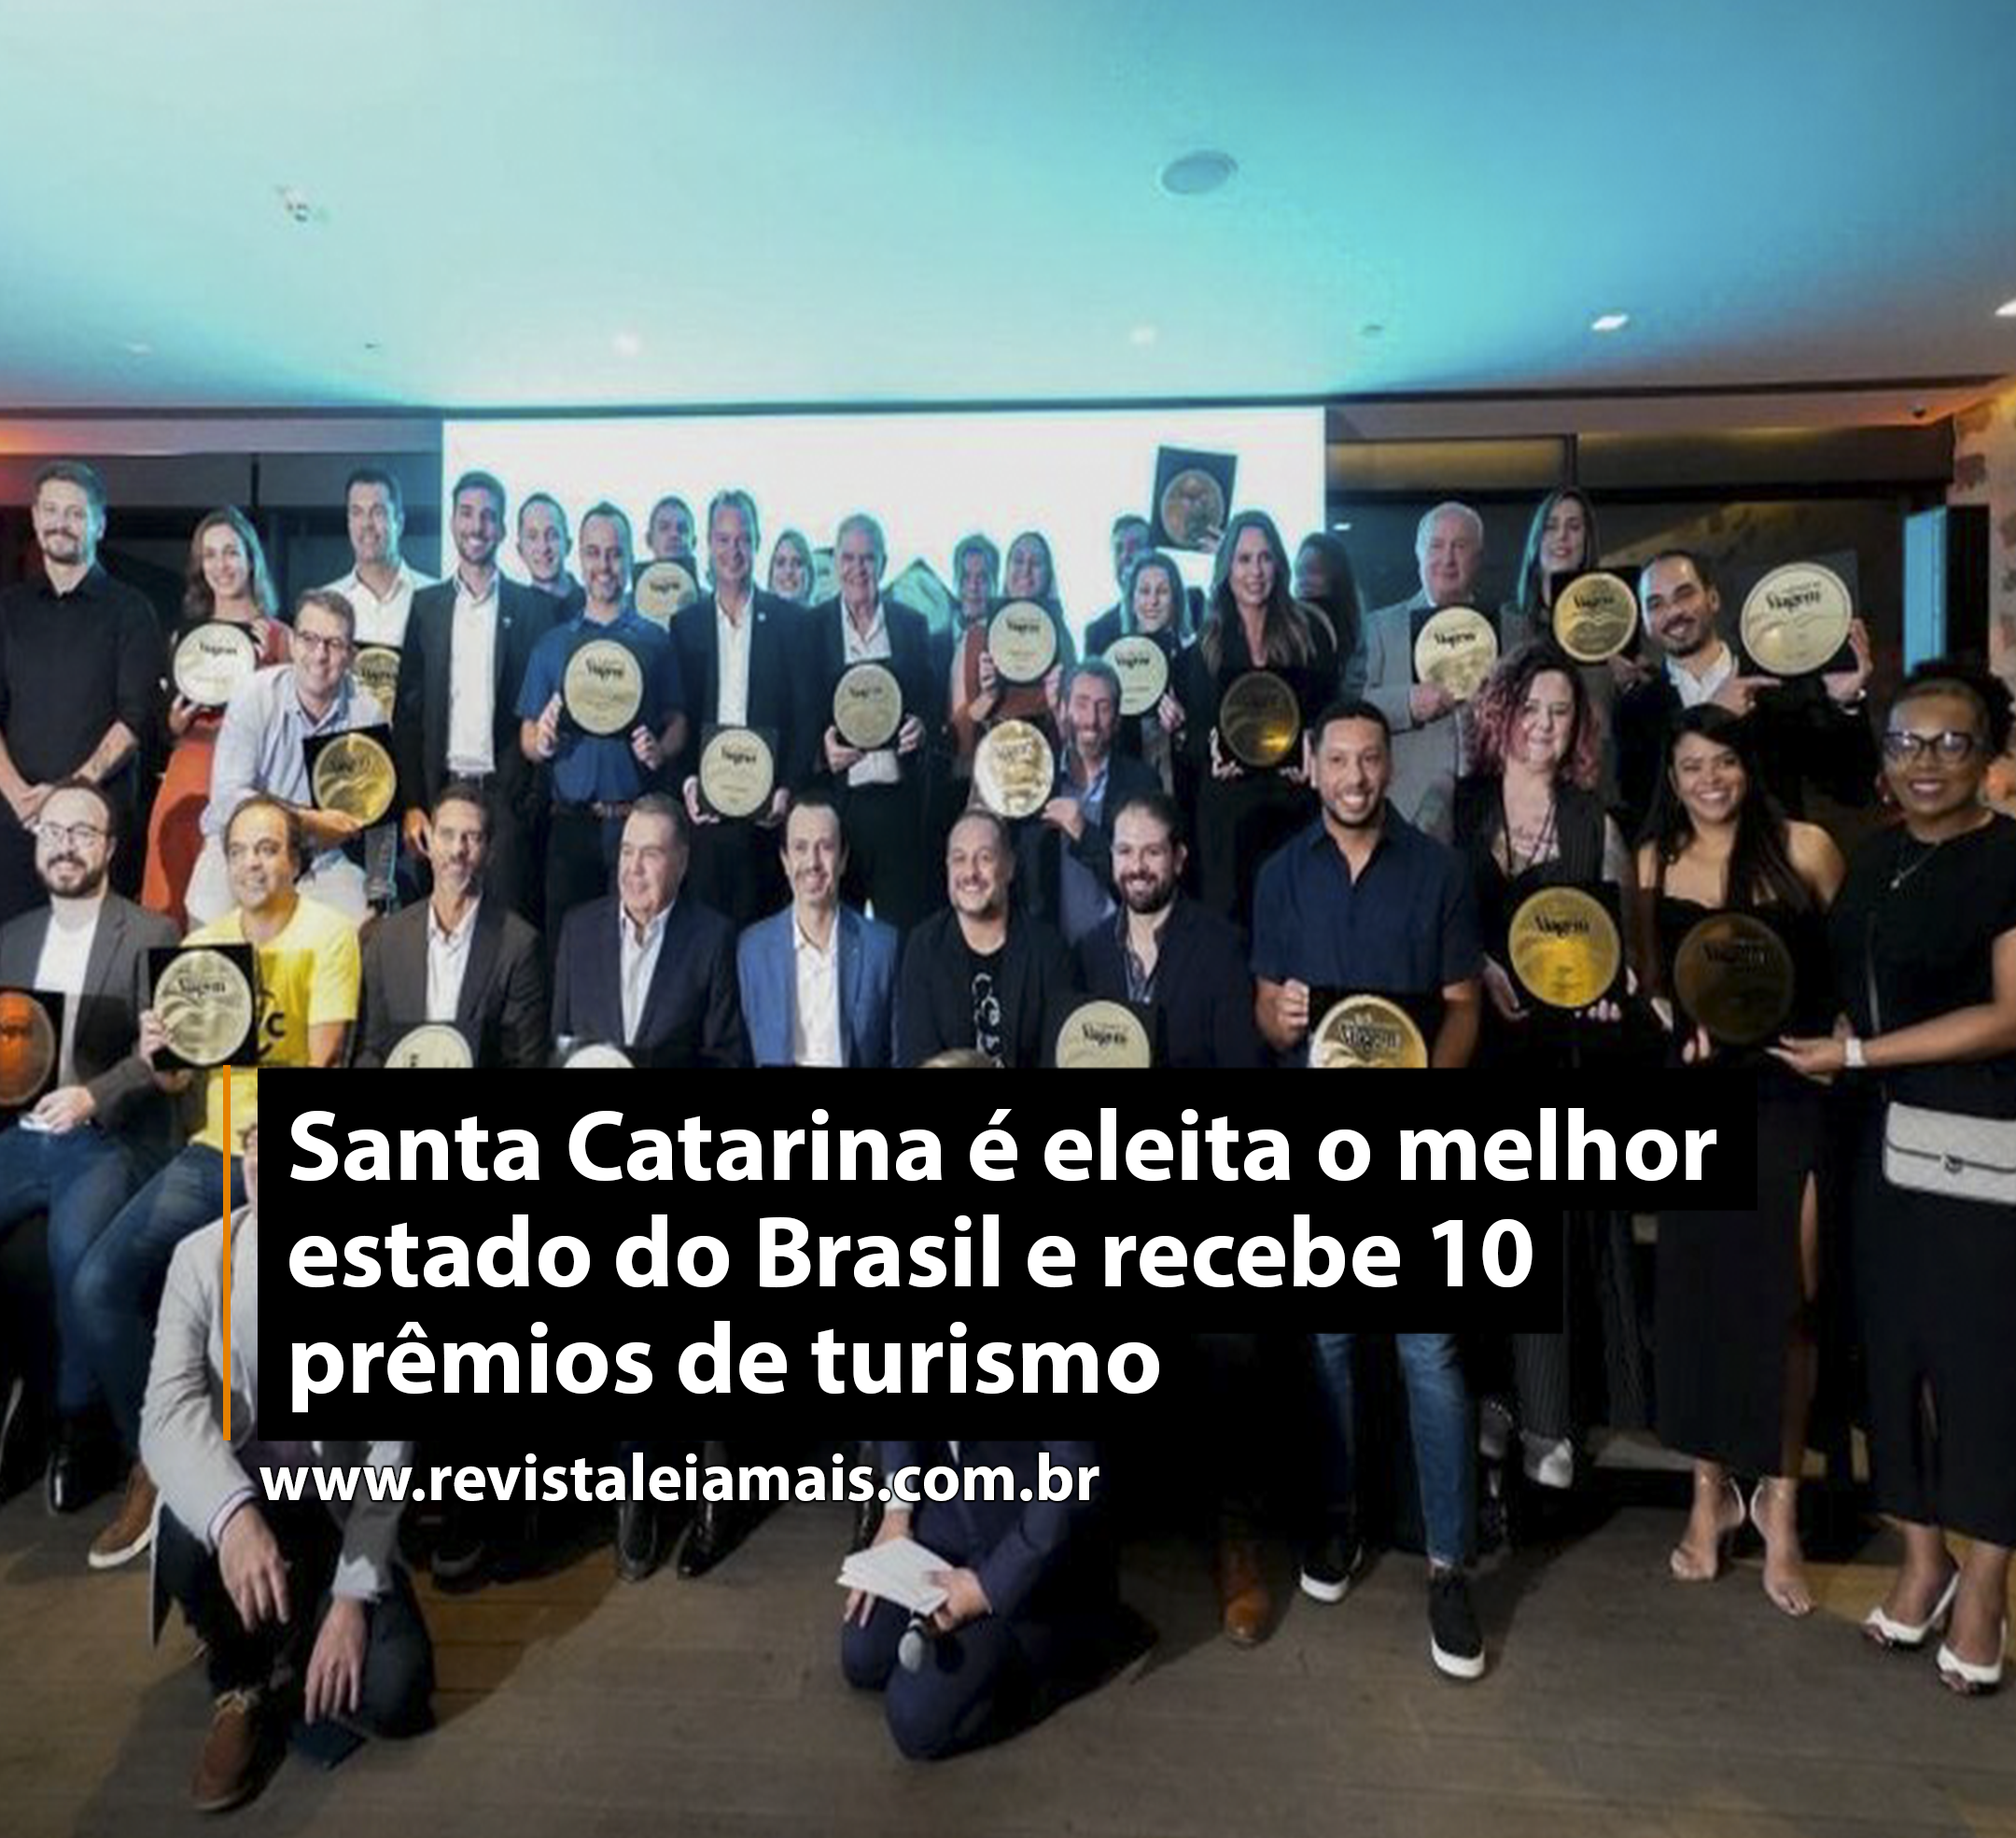 Santa Catarina é eleita o melhor estado do Brasil e recebe 10 prêmios de turismo